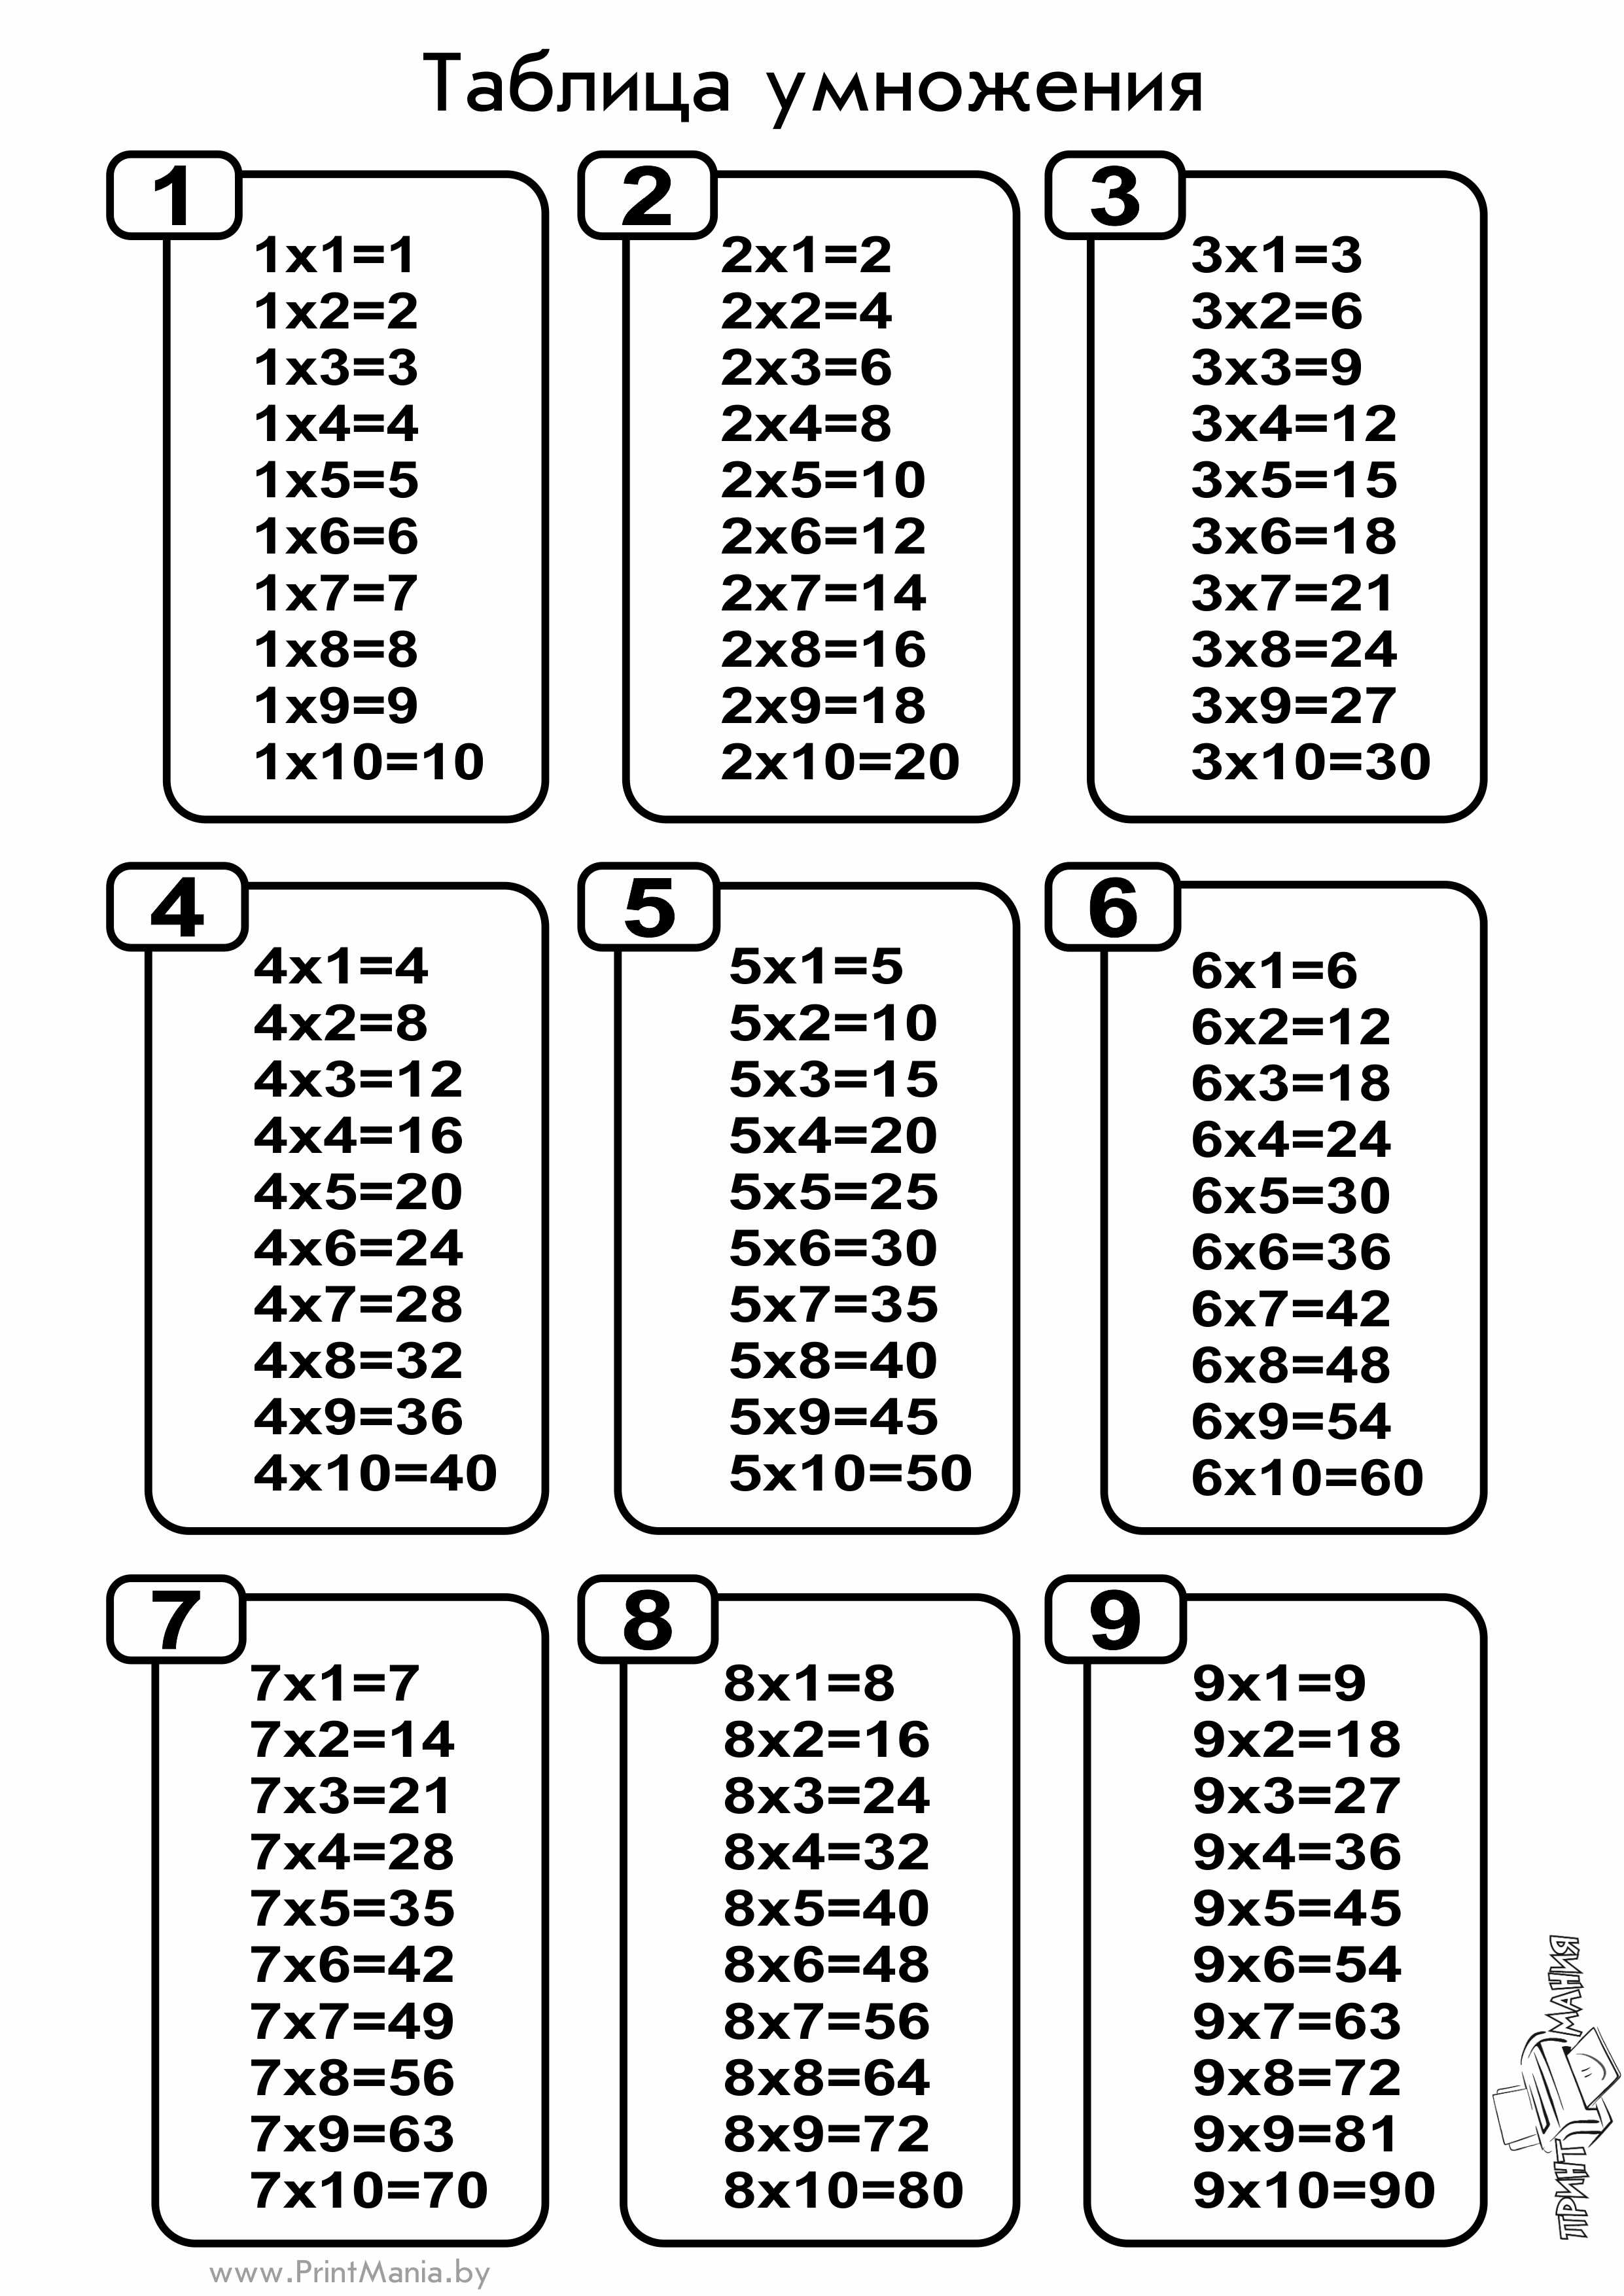 Таблица на 4 картинки. Таблица умножения а4 для печати. Таблица умножения Формат а4. Умножение таблица умножения таблица умножения. Таблица умножения от 2 до 4.